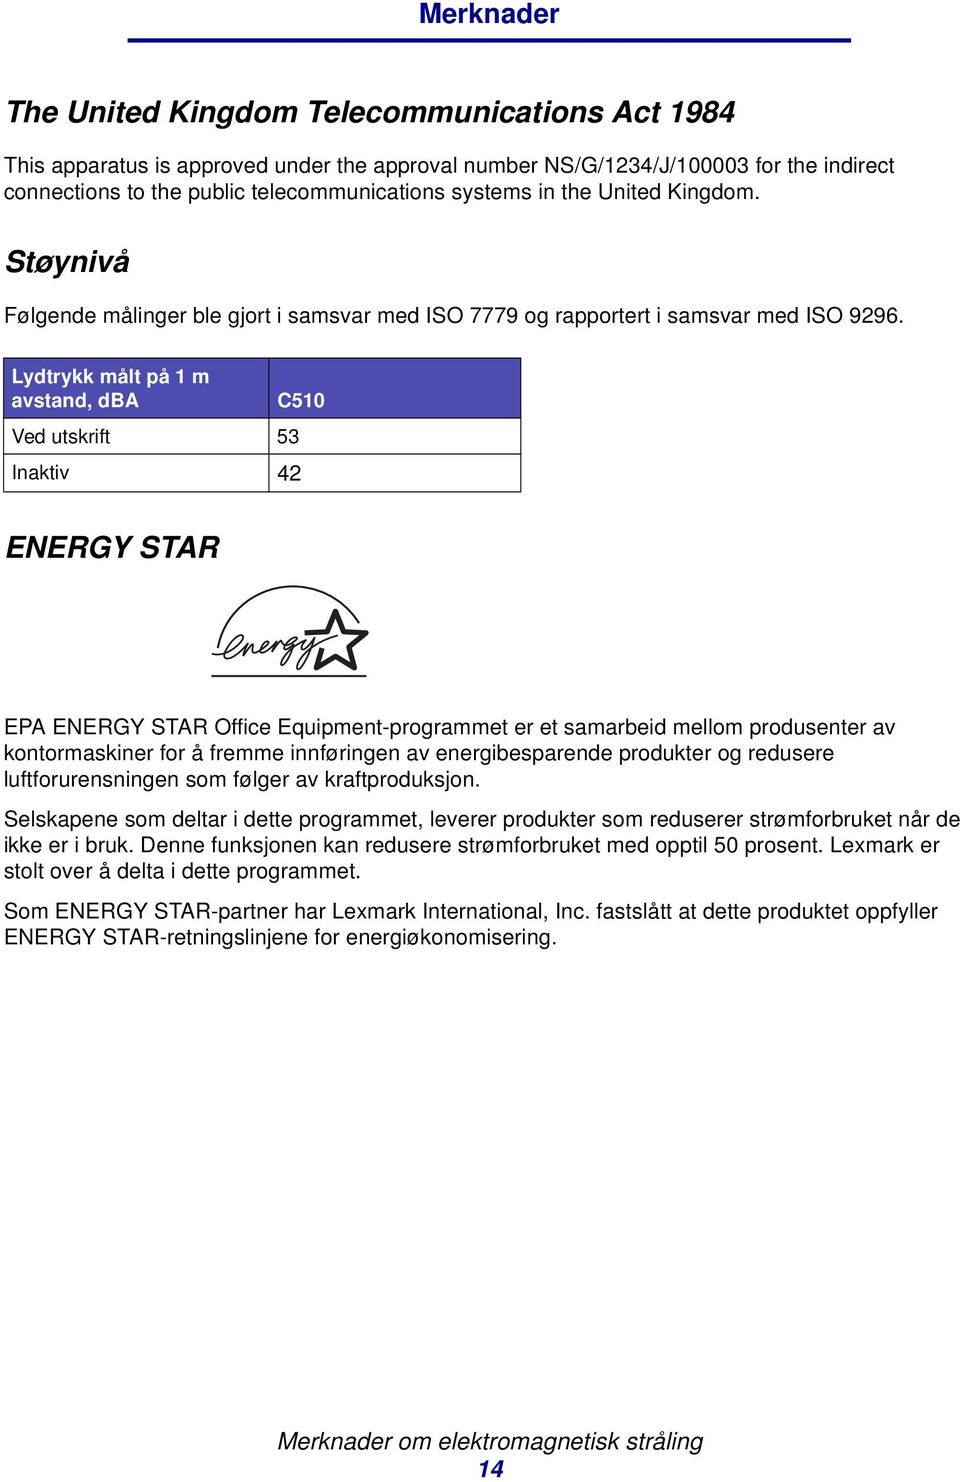 Lydtrykk målt på 1 m avstand, dba C510 Ved utskrift 53 Inaktiv 42 ENERGY STAR EPA ENERGY STAR Office Equipment-programmet er et samarbeid mellom produsenter av kontormaskiner for å fremme innføringen